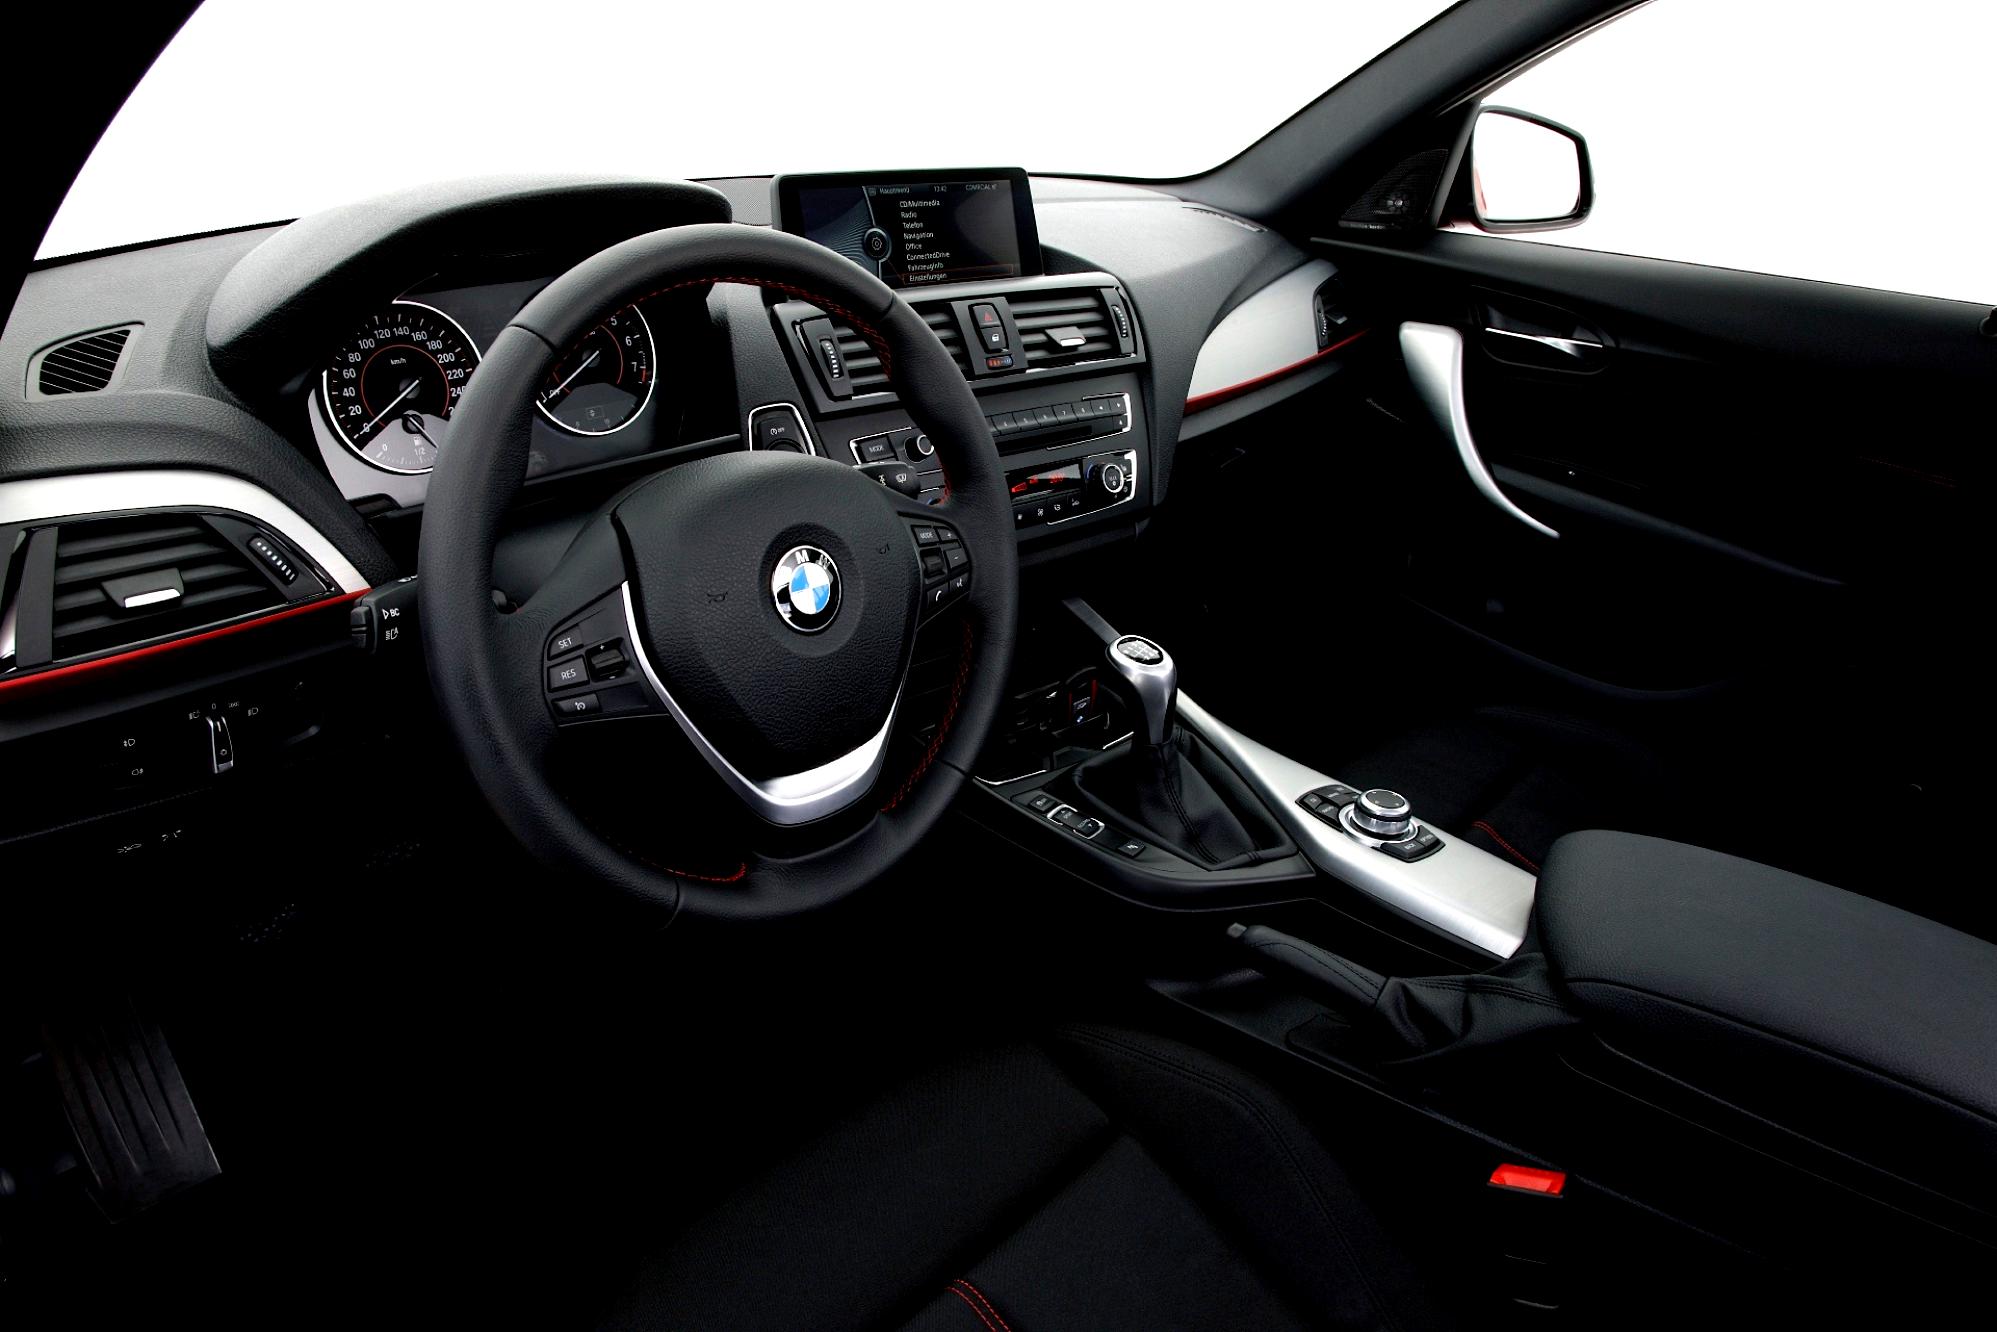 BMW 1 Series 3 Doors F21 2012 #93